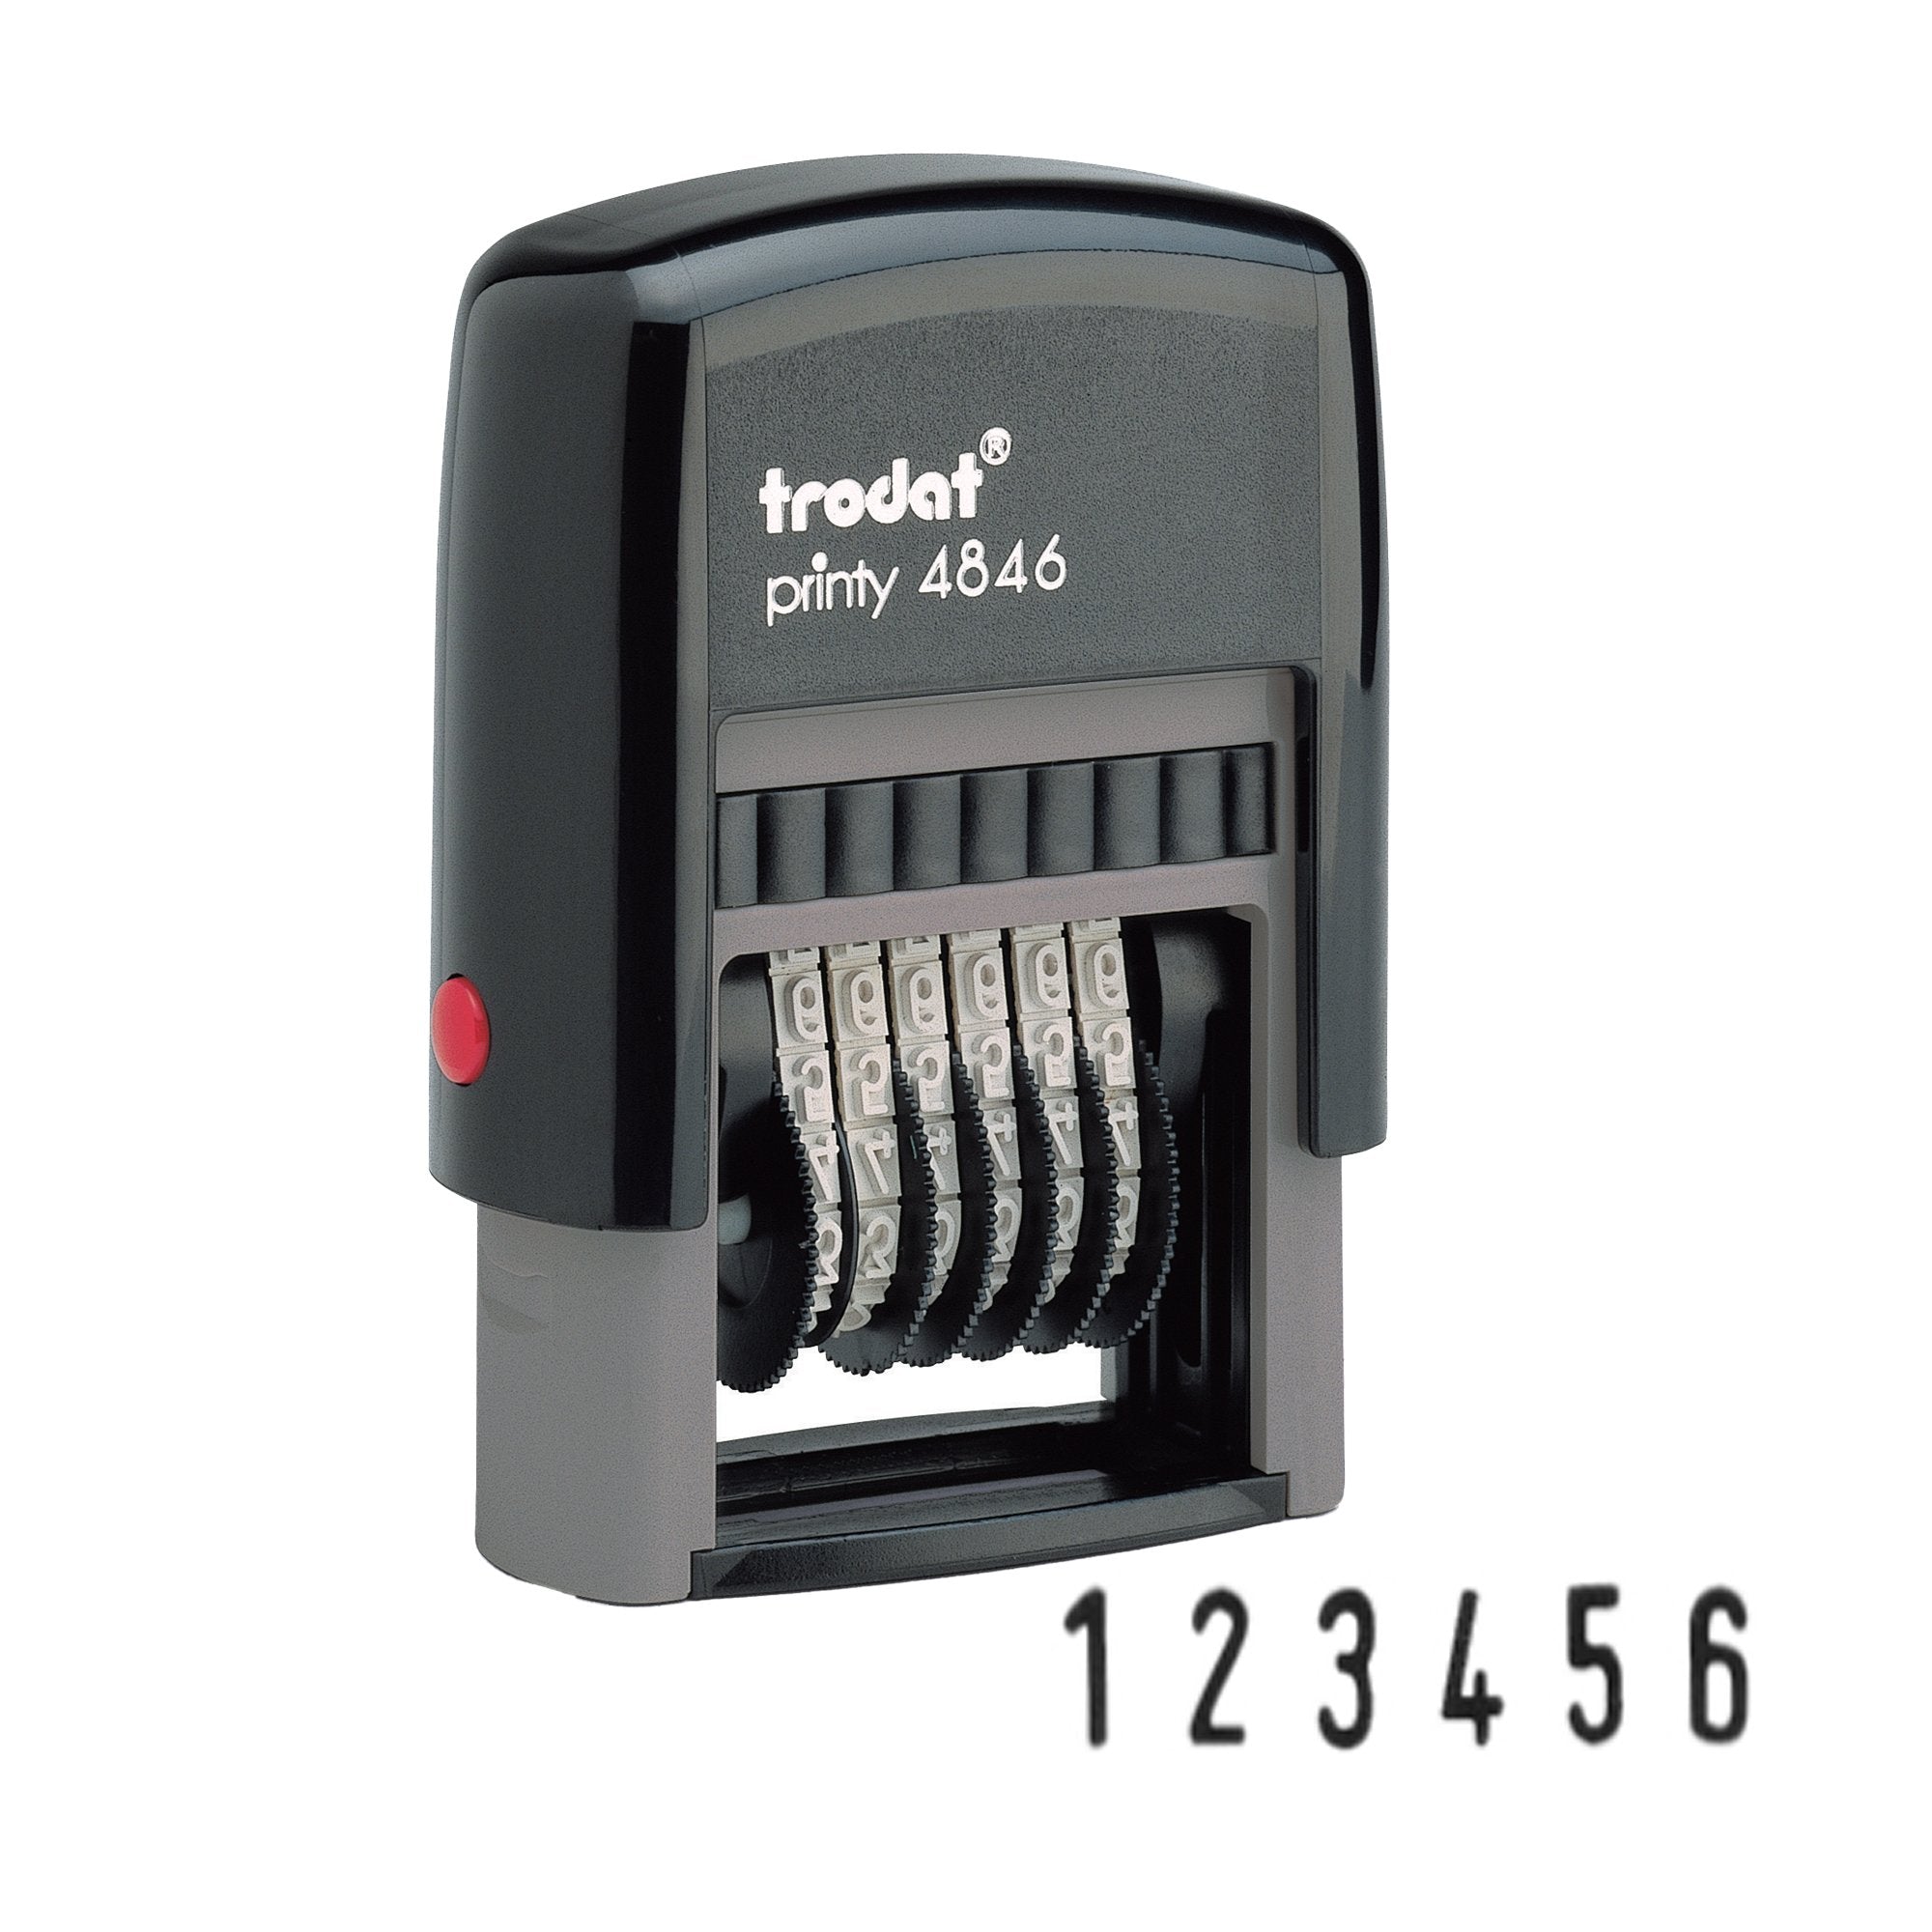 trodat-timbro-printy-eco-4846-numeratore-6cifre-4mm-autoinchiostrante